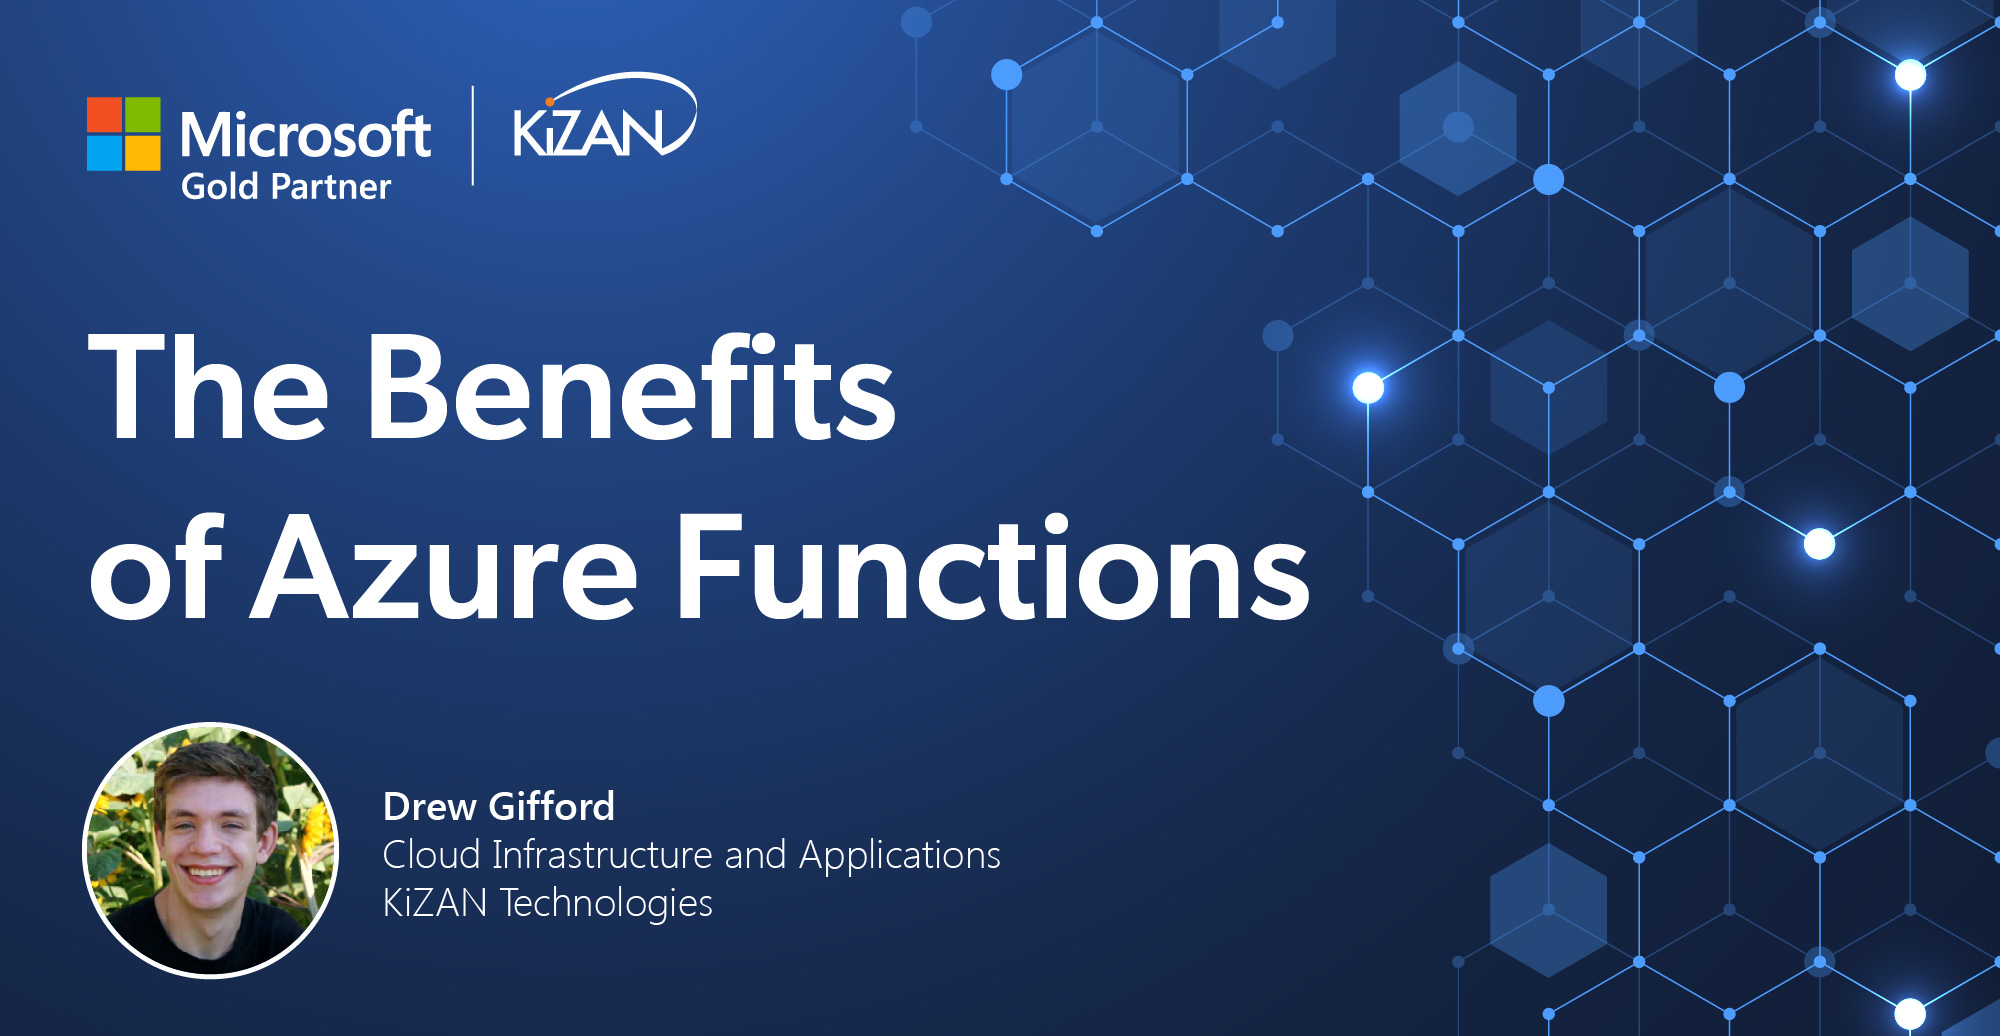 KiZAN | The Benefits of Azure Functions